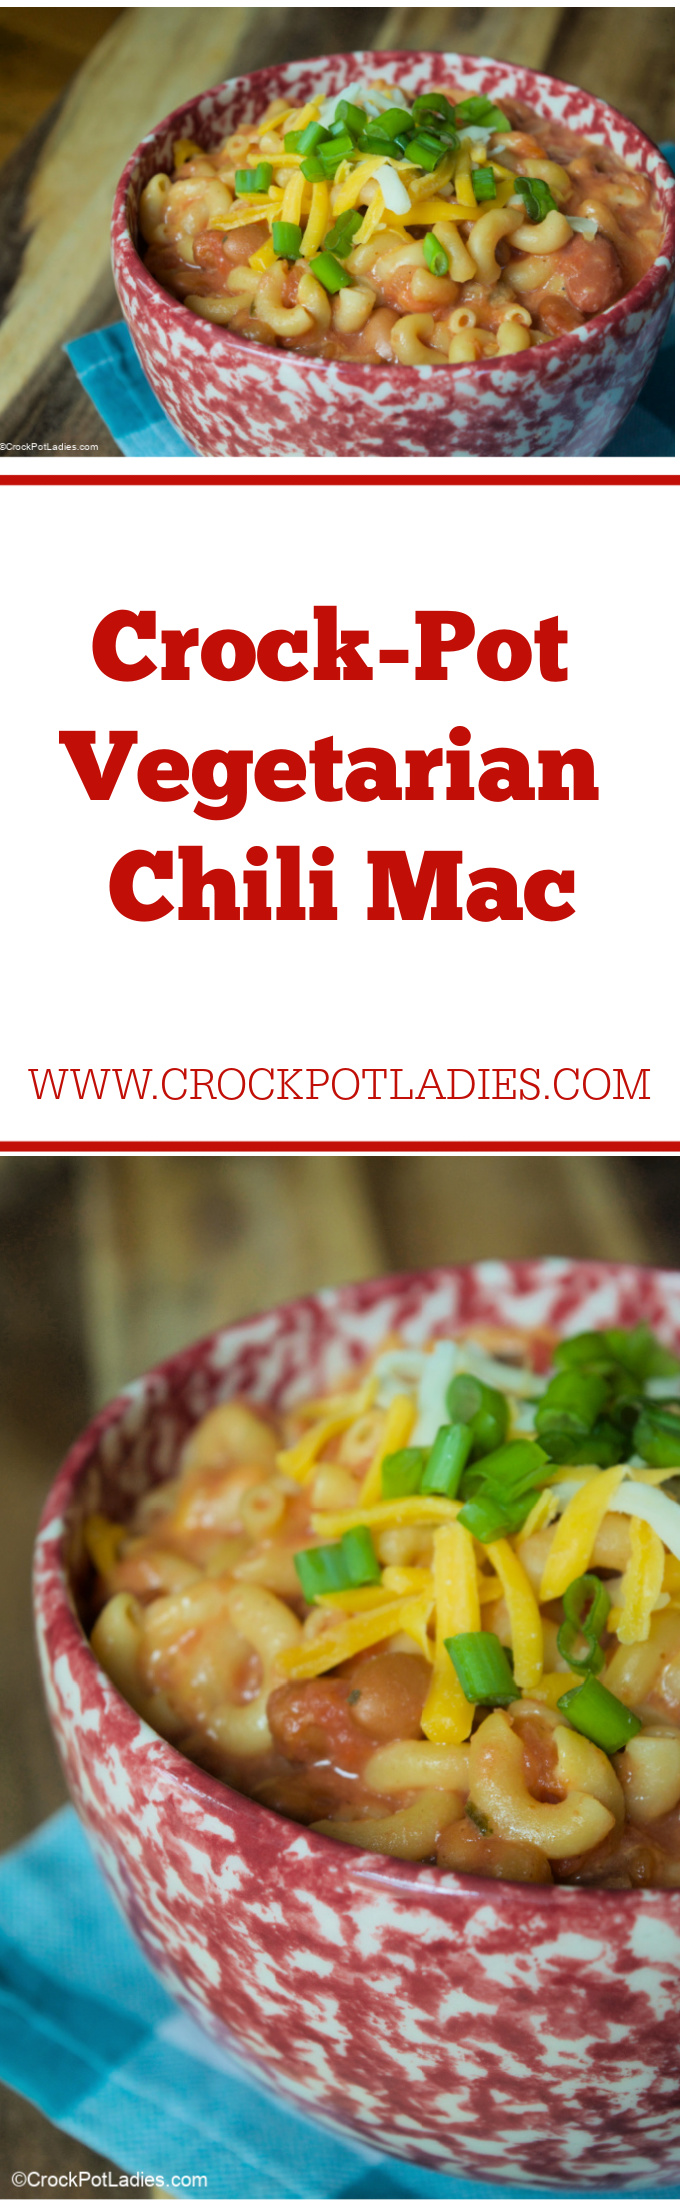 Crock-Pot Vegetarian Chili Mac